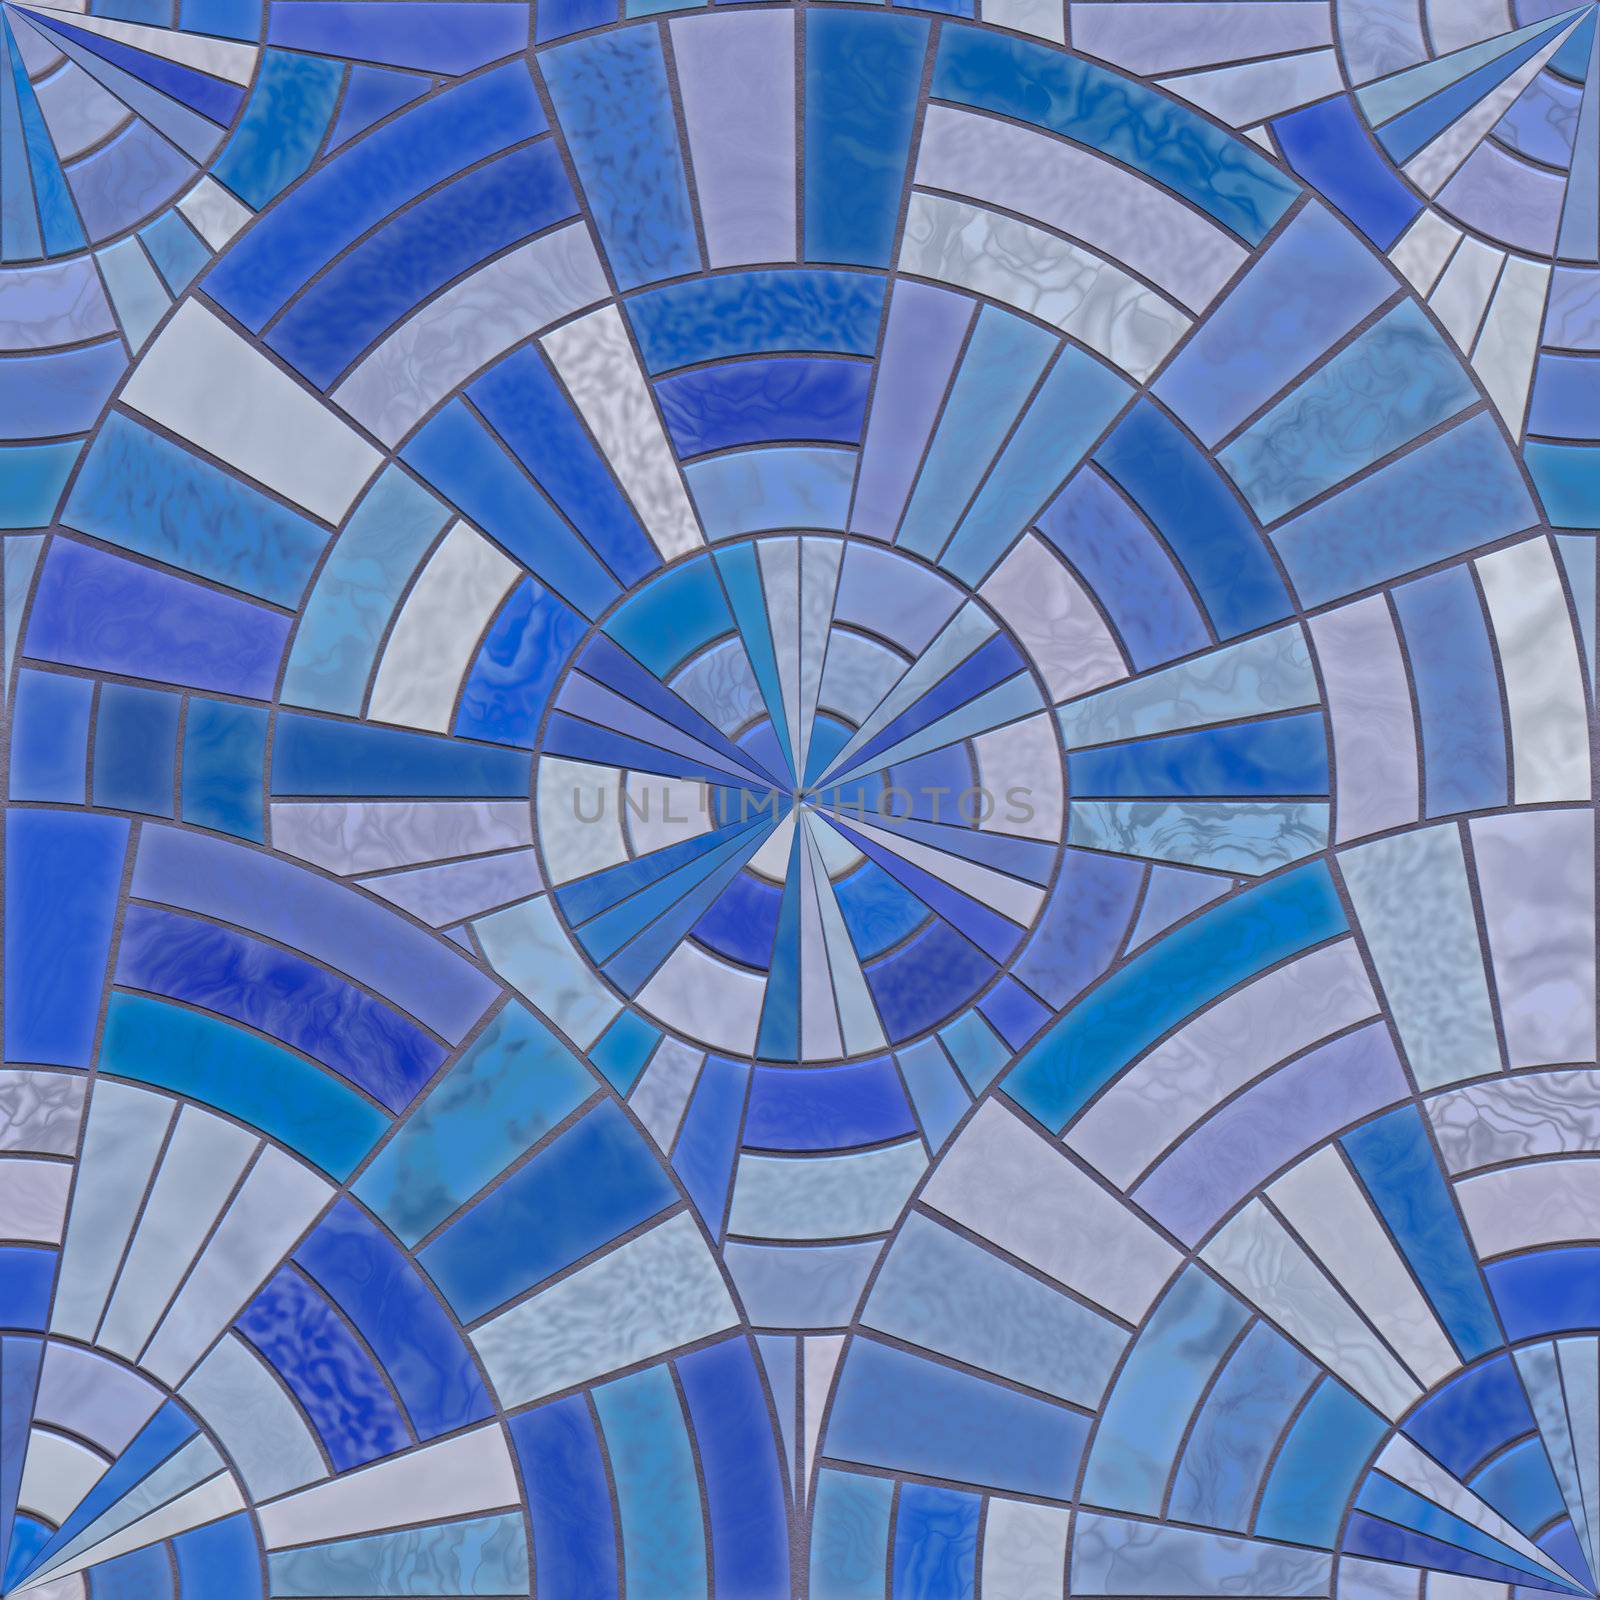 Blue circular tiles by Nanisimova